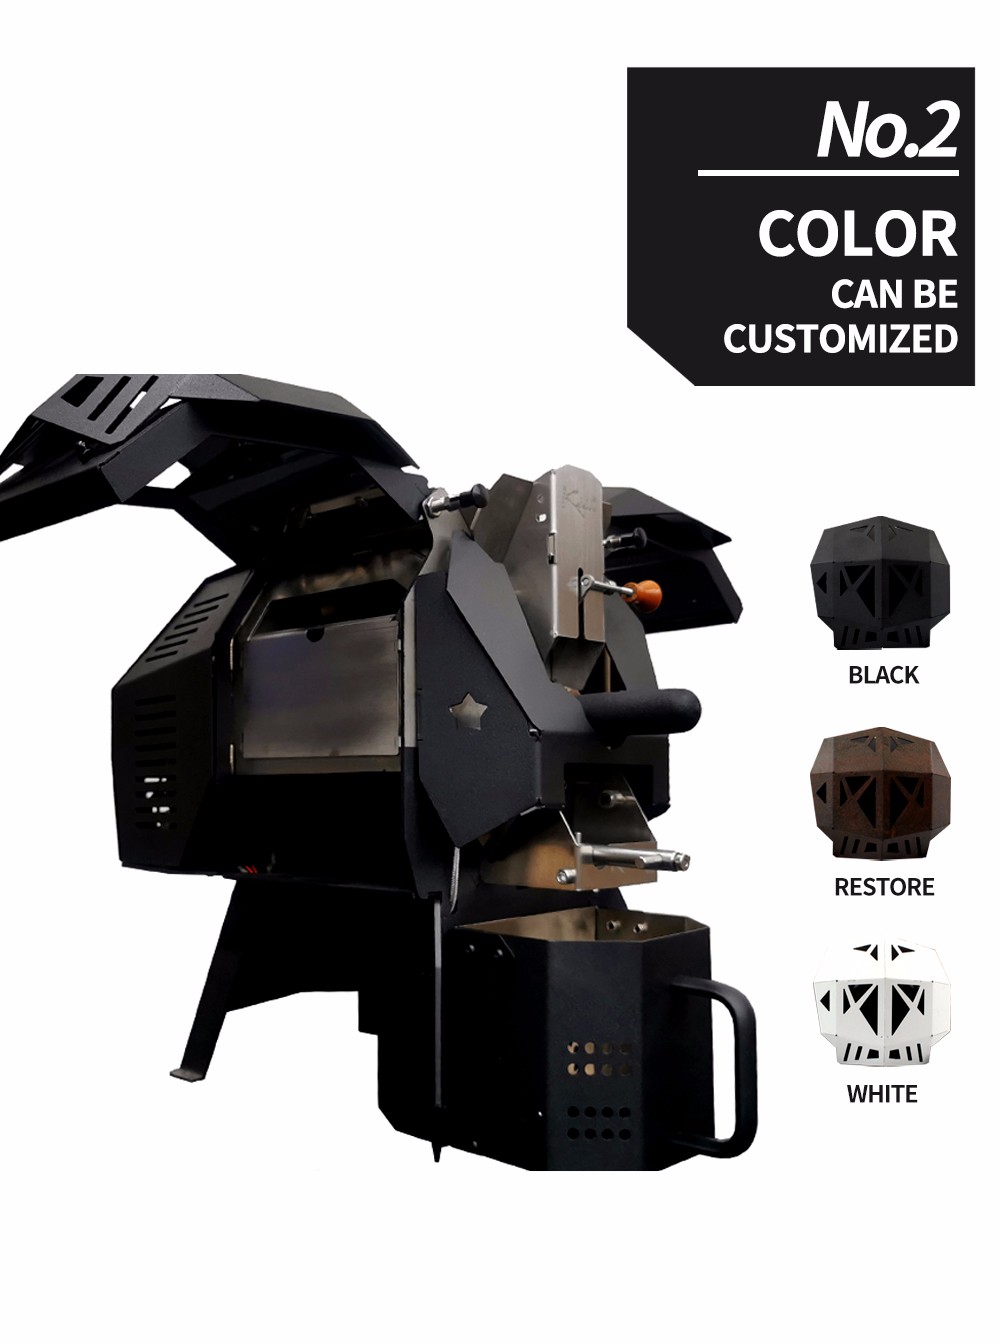 Renk Özelleştirilmiş Hava Kahve Kavurma Makinesi satın al,Renk Özelleştirilmiş Hava Kahve Kavurma Makinesi Fiyatlar,Renk Özelleştirilmiş Hava Kahve Kavurma Makinesi Markalar,Renk Özelleştirilmiş Hava Kahve Kavurma Makinesi Üretici,Renk Özelleştirilmiş Hava Kahve Kavurma Makinesi Alıntılar,Renk Özelleştirilmiş Hava Kahve Kavurma Makinesi Şirket,